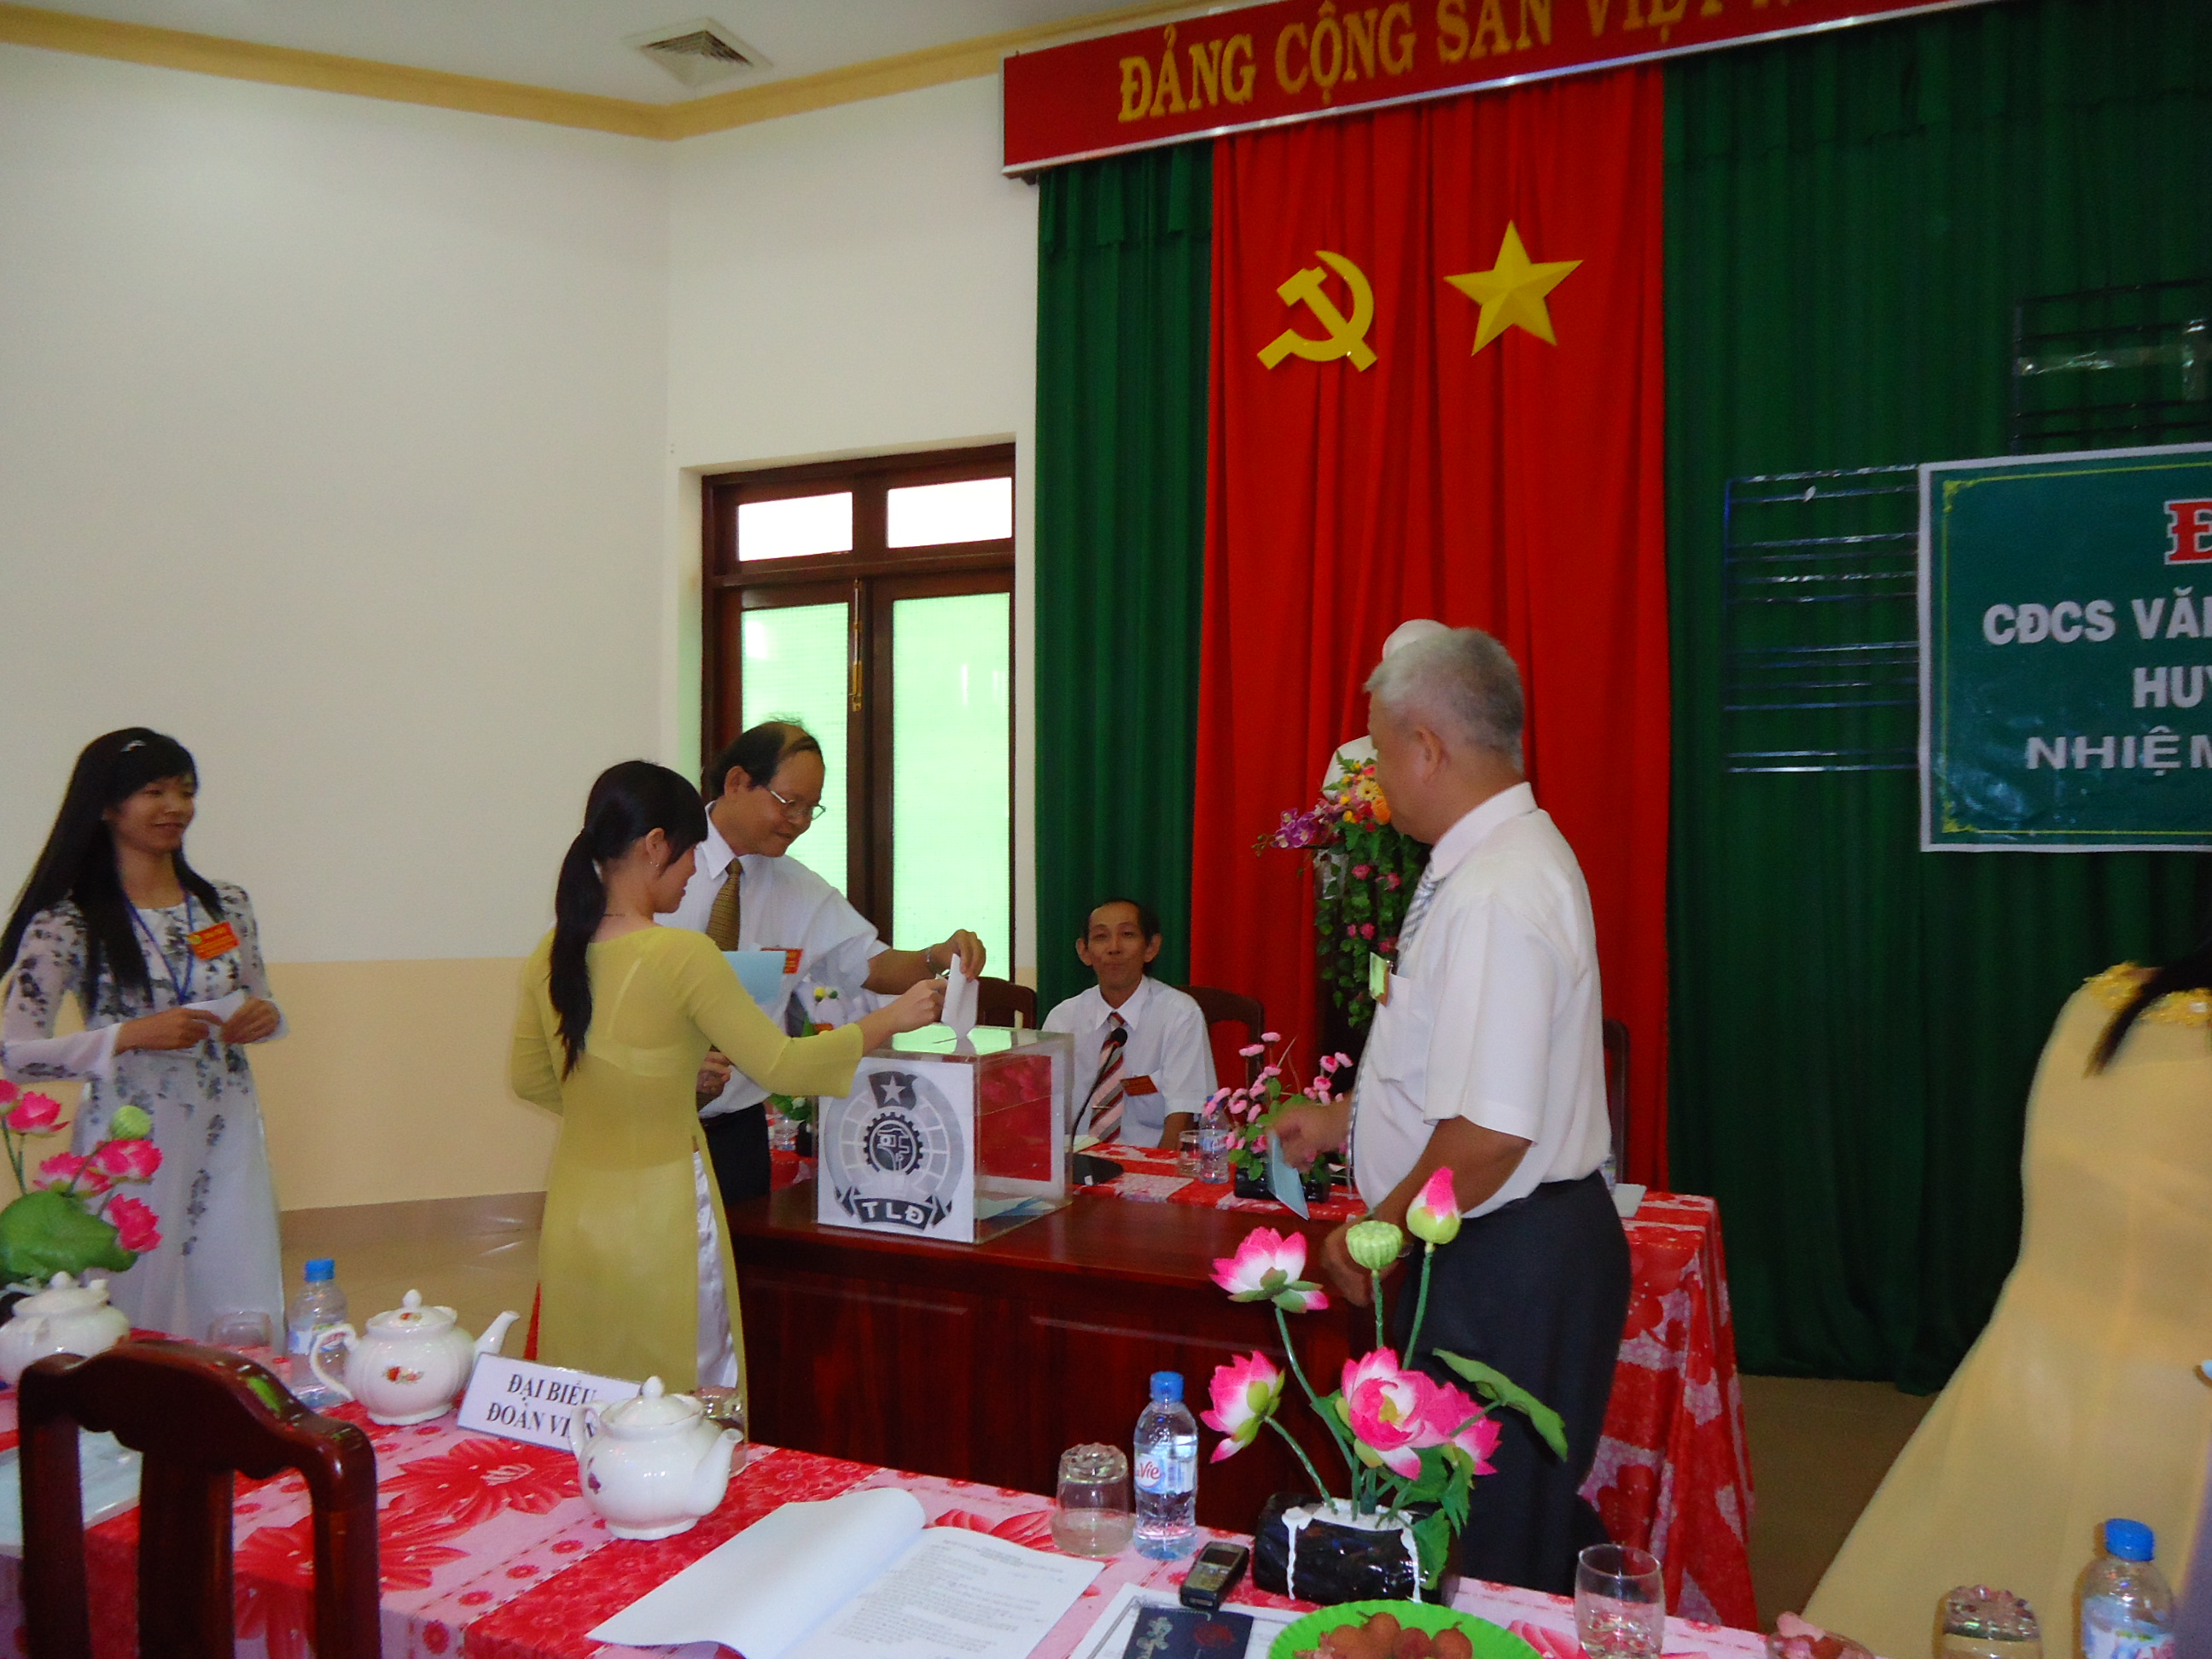 Đại biểu bỏ phiếu bầu cử BCH và Đoàn đại biểu đi dự Đại hội Công đoàn huyện